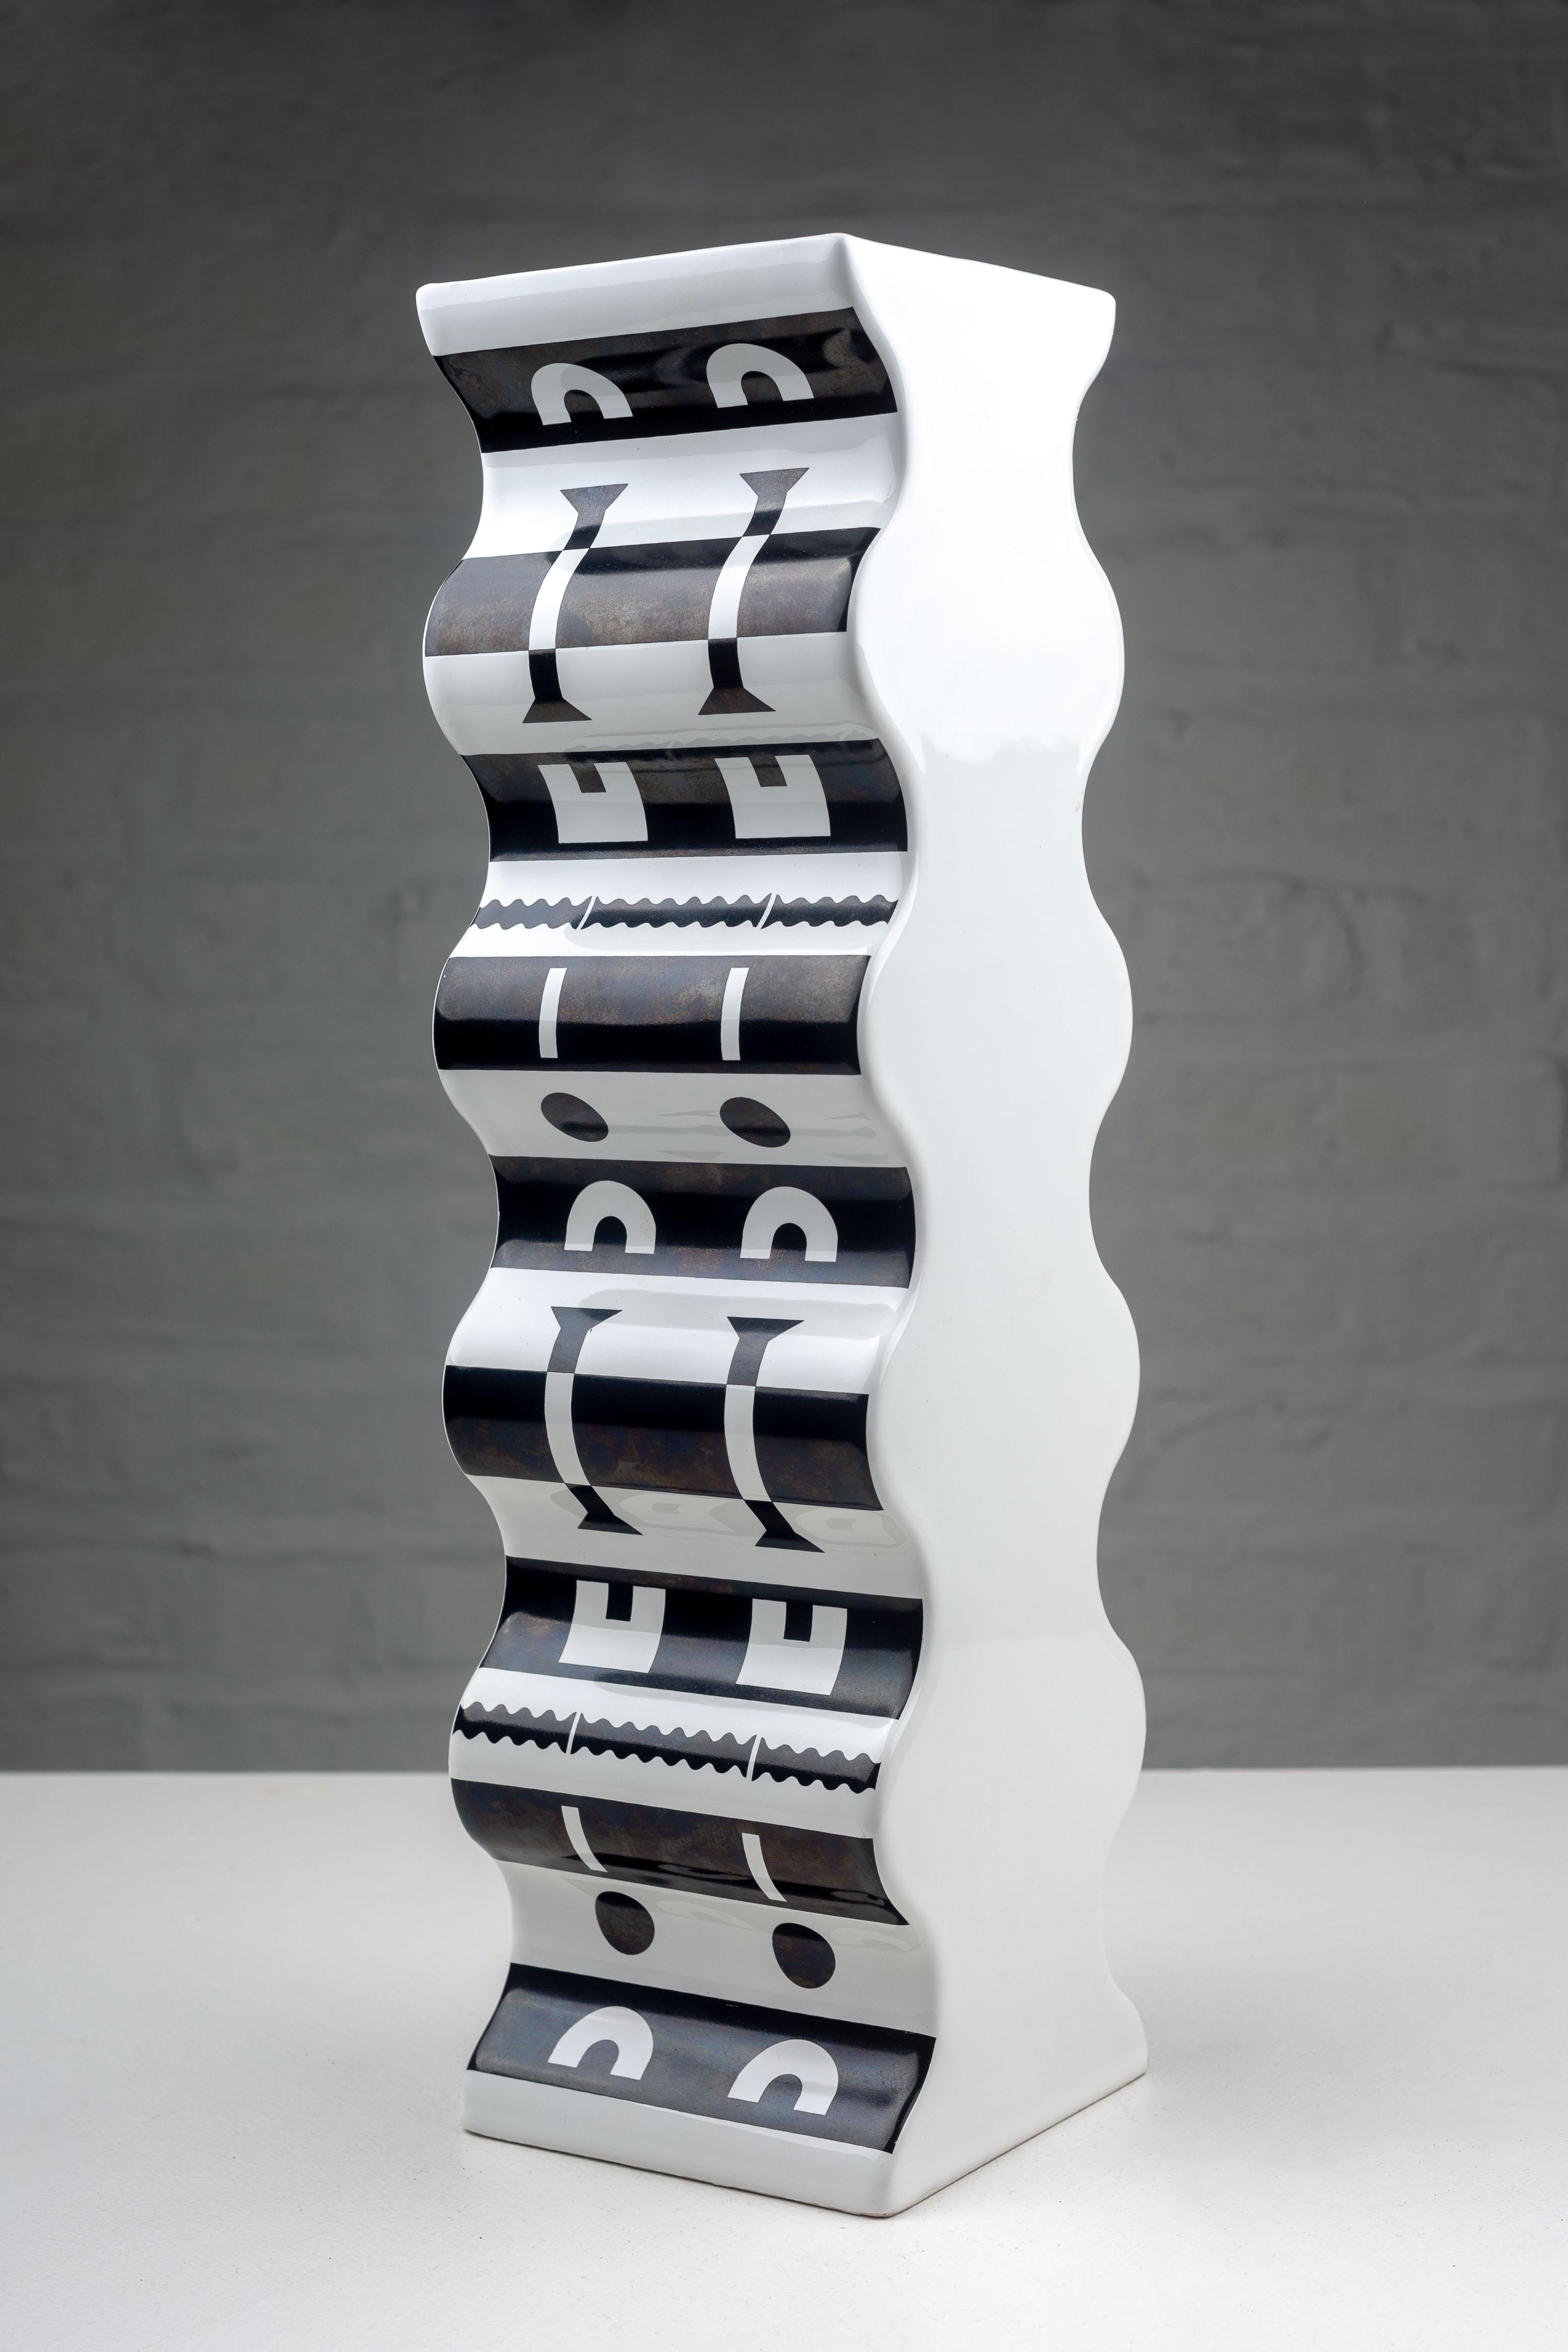 Alessandro Mendini a créé ce vase évocateur pour le Studio Alchimia en 1988. D'une hauteur imposante, semblable à une colonne, le vase présente une série de contours ondulés et sinueux qui donnent une illusion de mouvement et de fluidité. Il s'agit